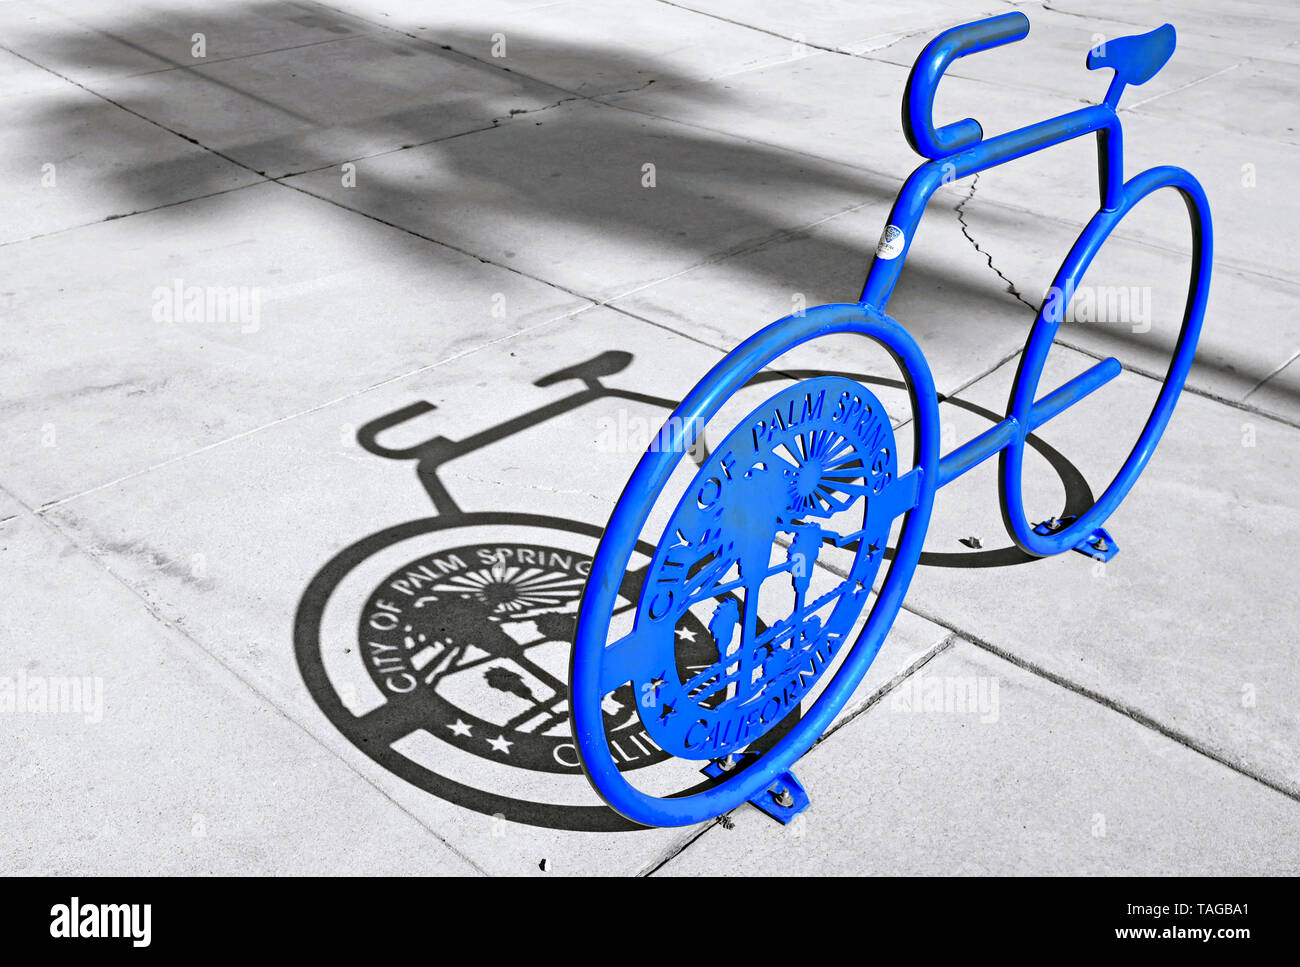 Un stand de vélo bleu avec l'insigne de la ville de Palm Springs Californie et l'ombre d'un palmier sur un trottoir à Palm Springs, Californie, États-Unis. Banque D'Images